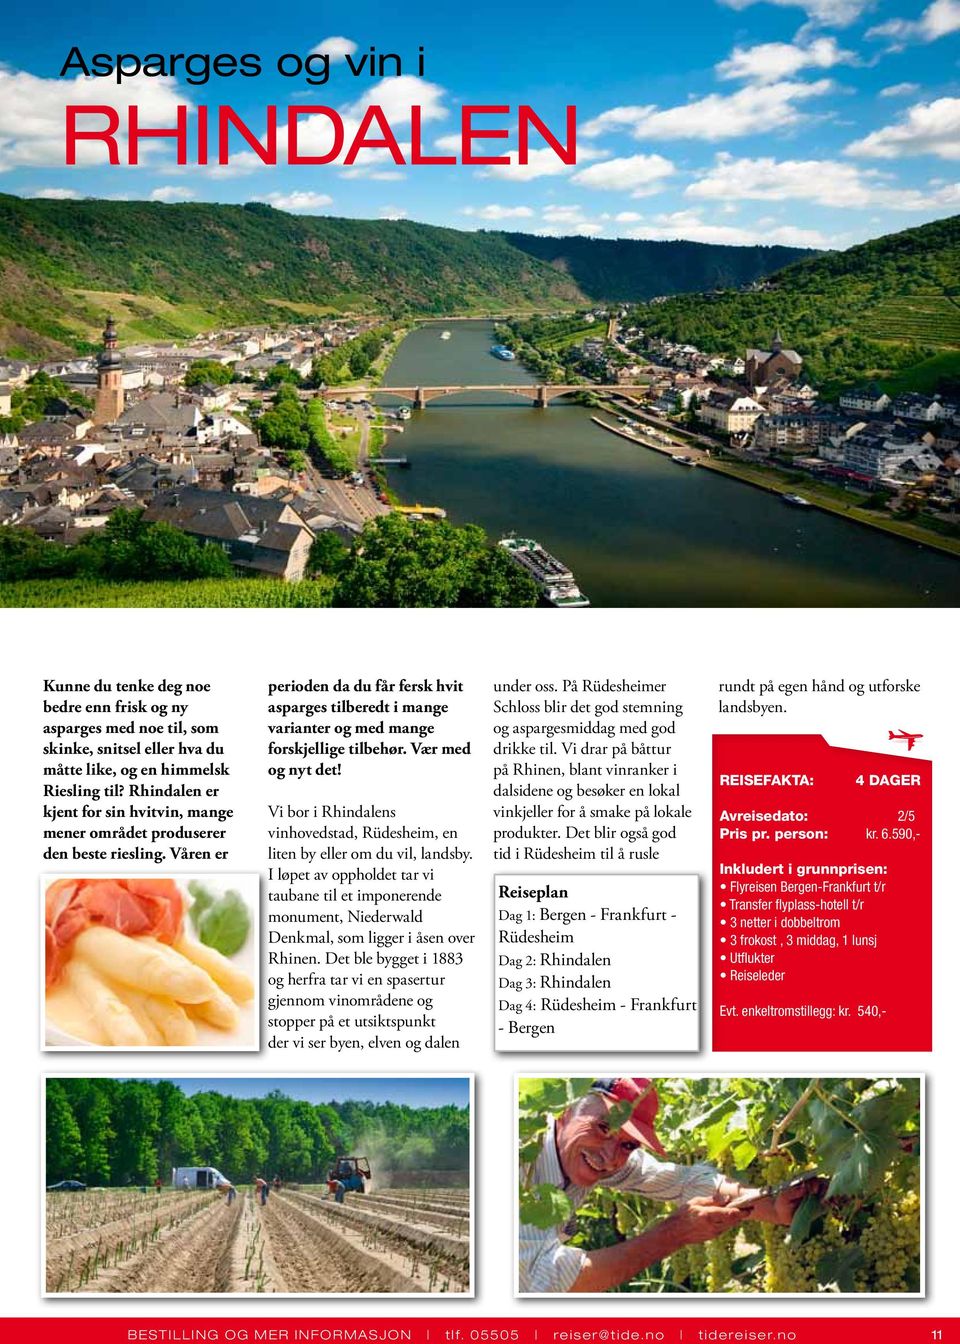 Vær med og nyt det! Vi bor i Rhindalens vinhovedstad, Rüdesheim, en liten by eller om du vil, landsby.